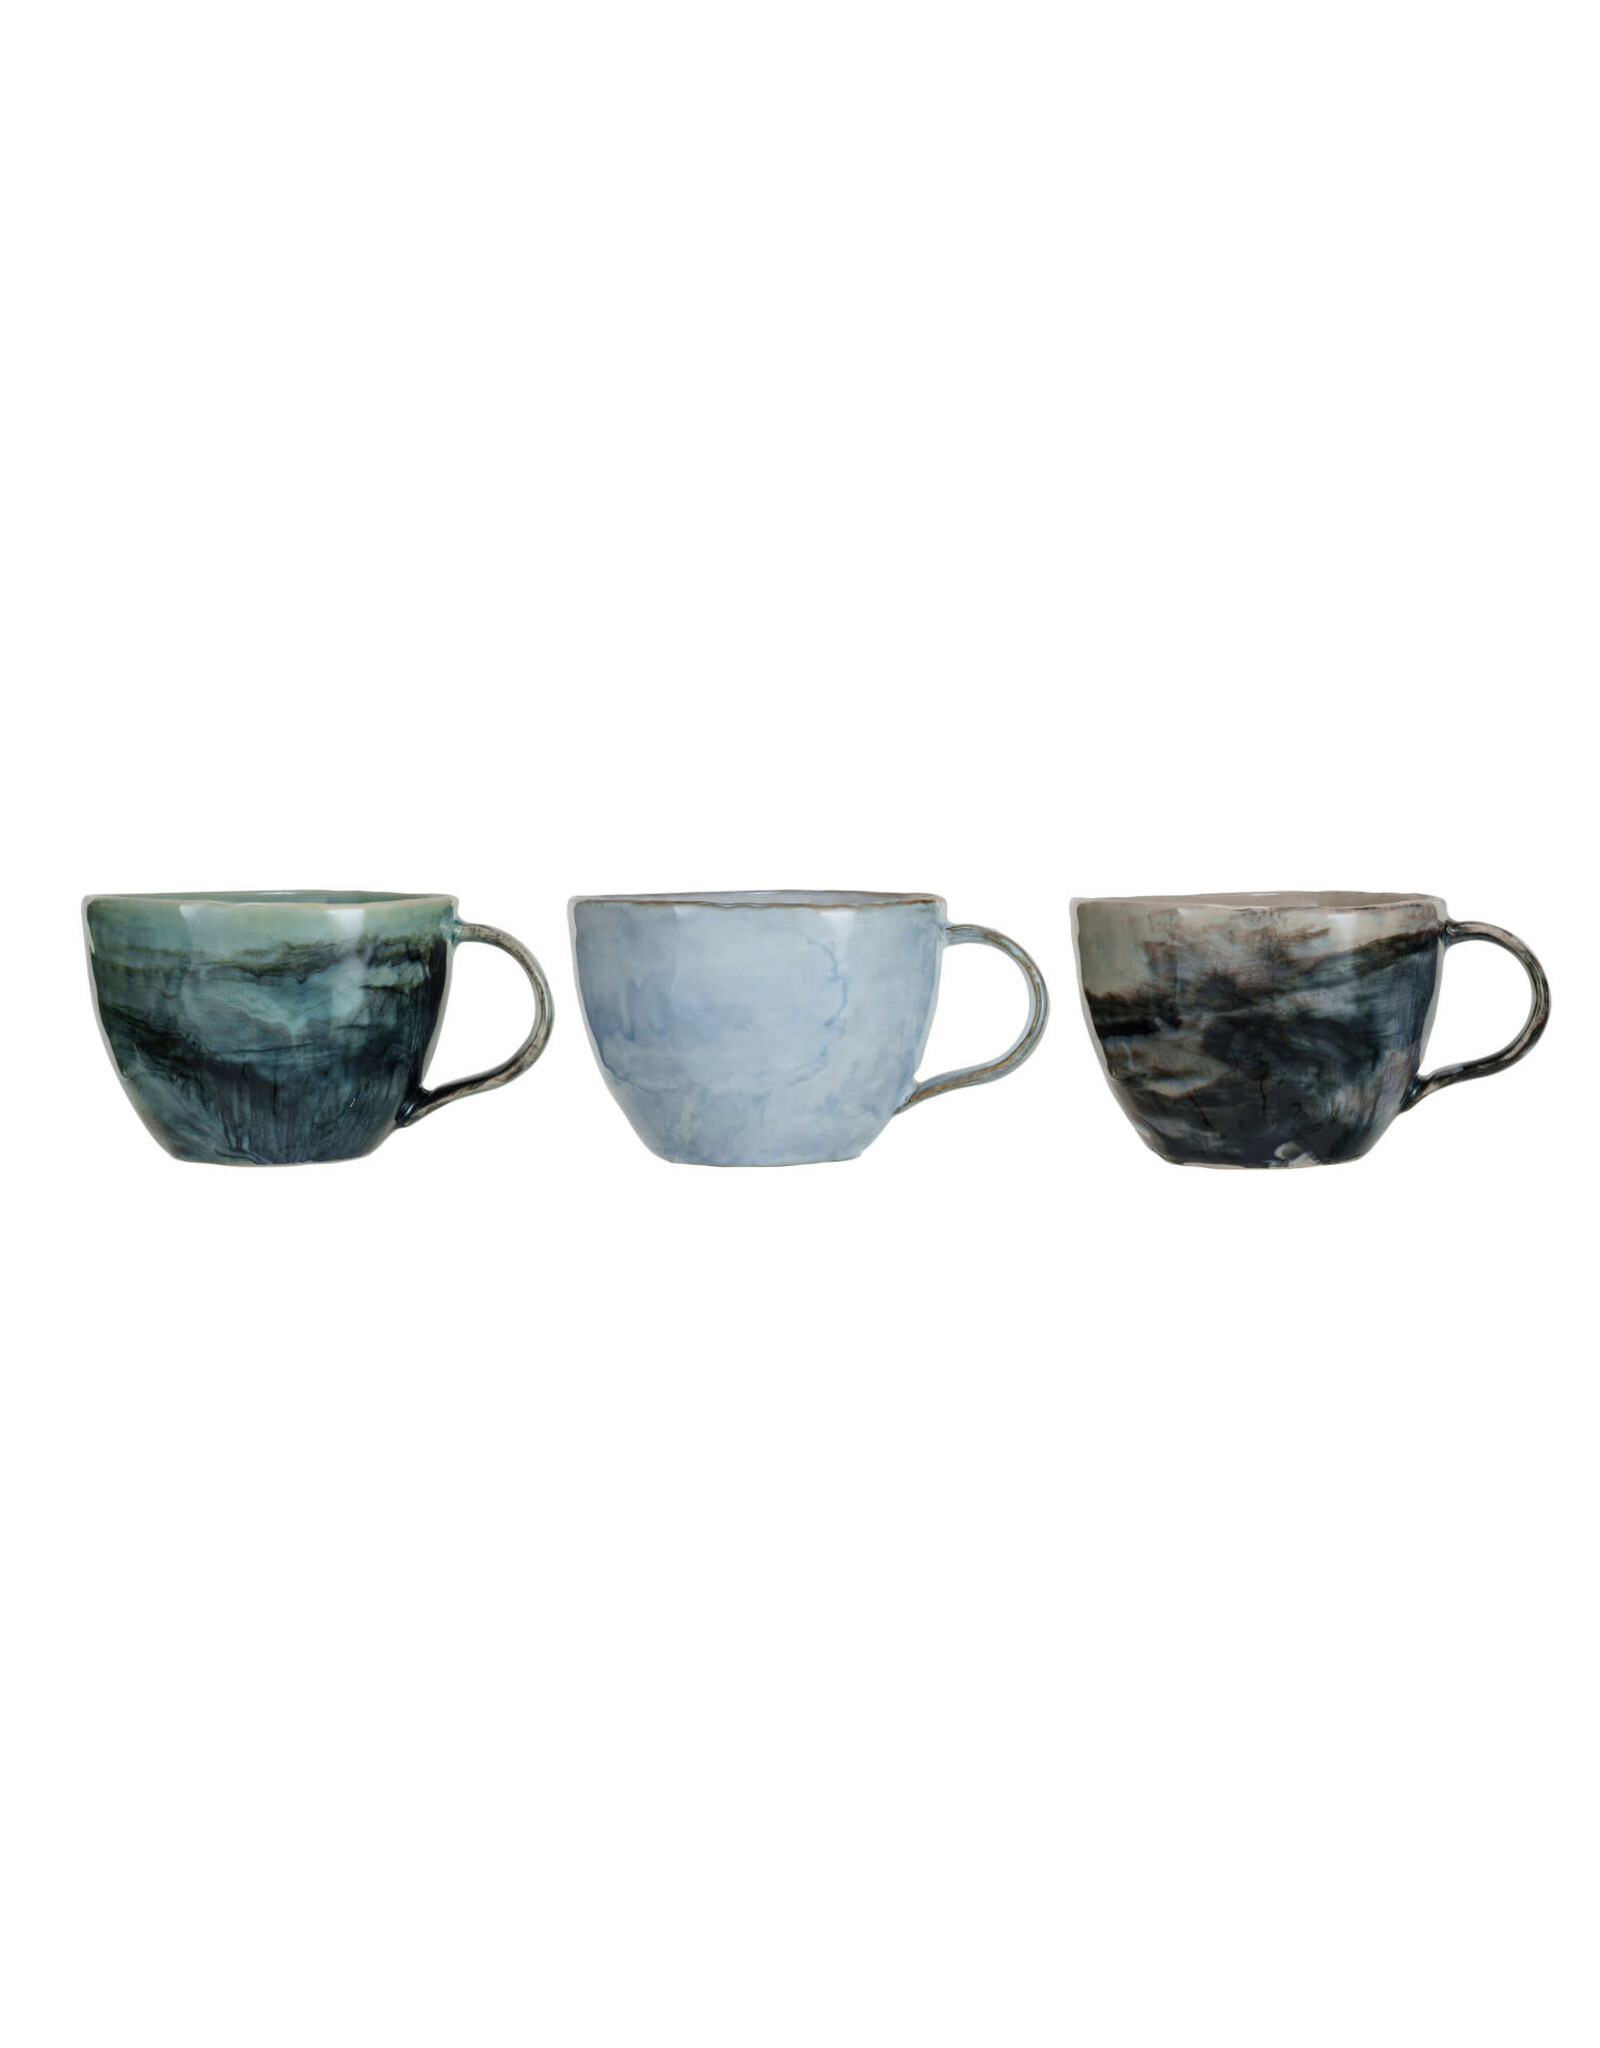 10 oz. Stoneware Mug, 3 Colors, EACH DF8625A